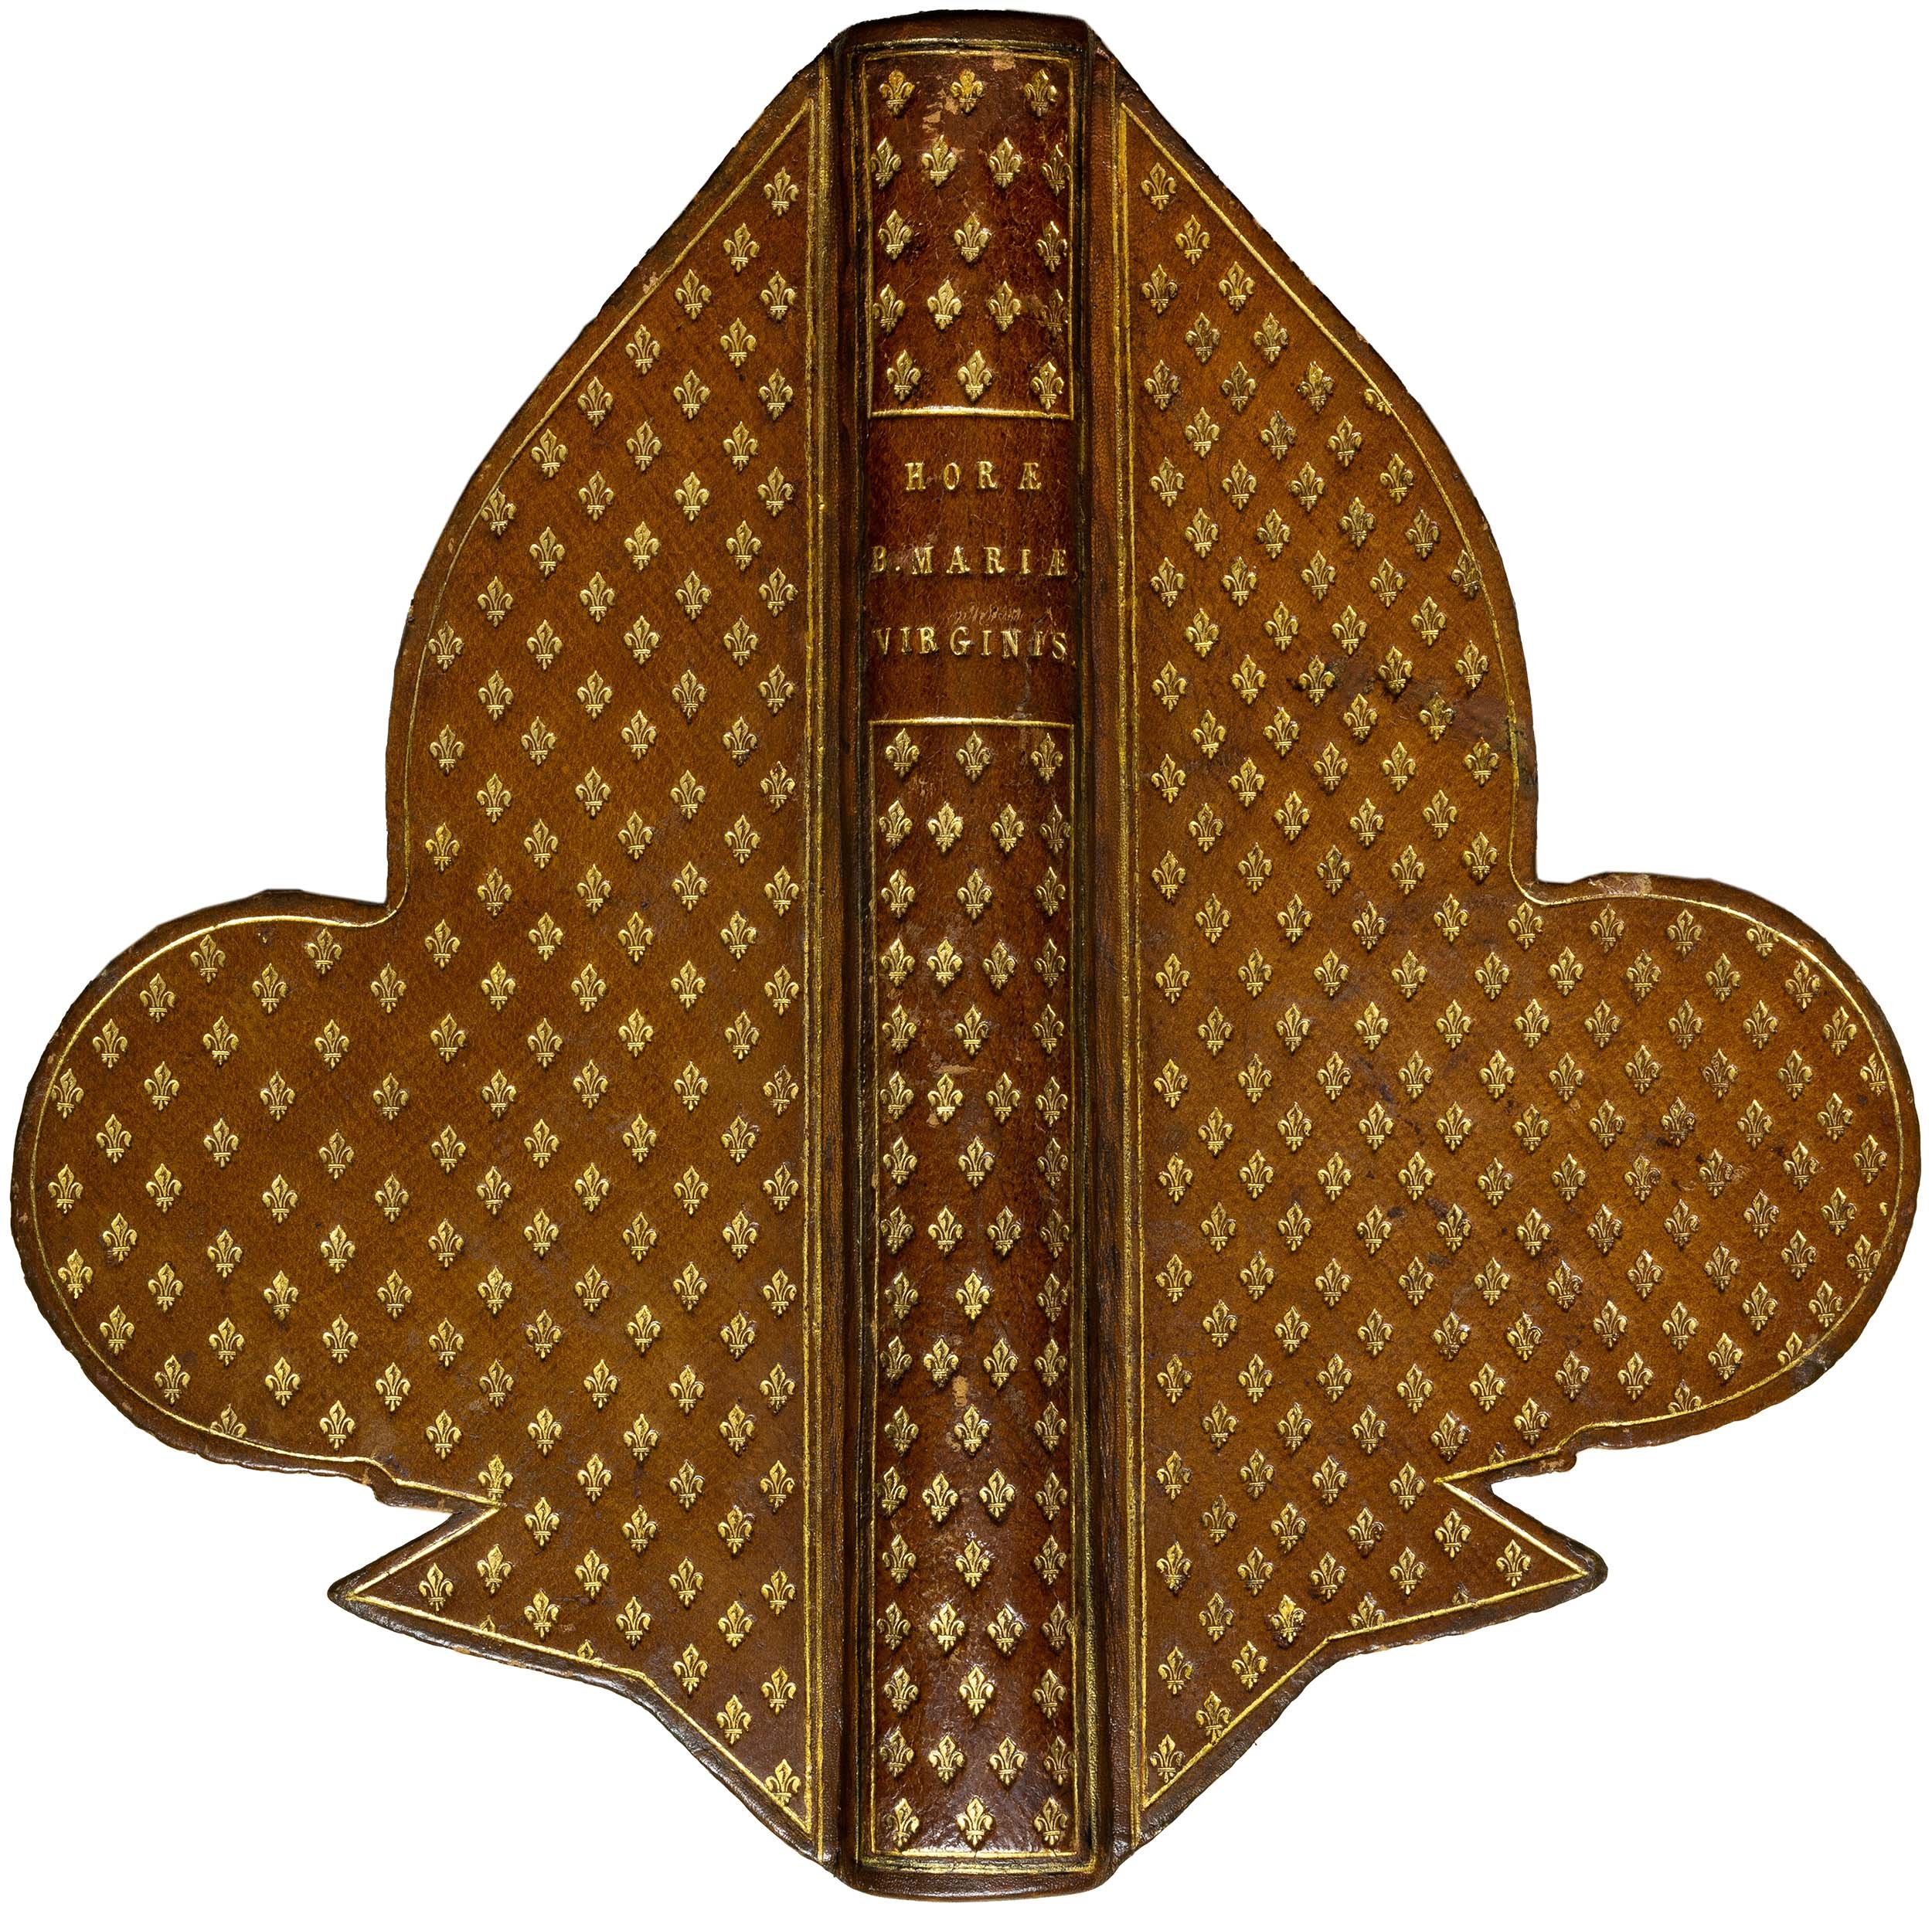 Book-of-hours-bourbon-lily-shape-manuscript-napoleon-beauharnais-combermere-paris-16th-century-01.jpg